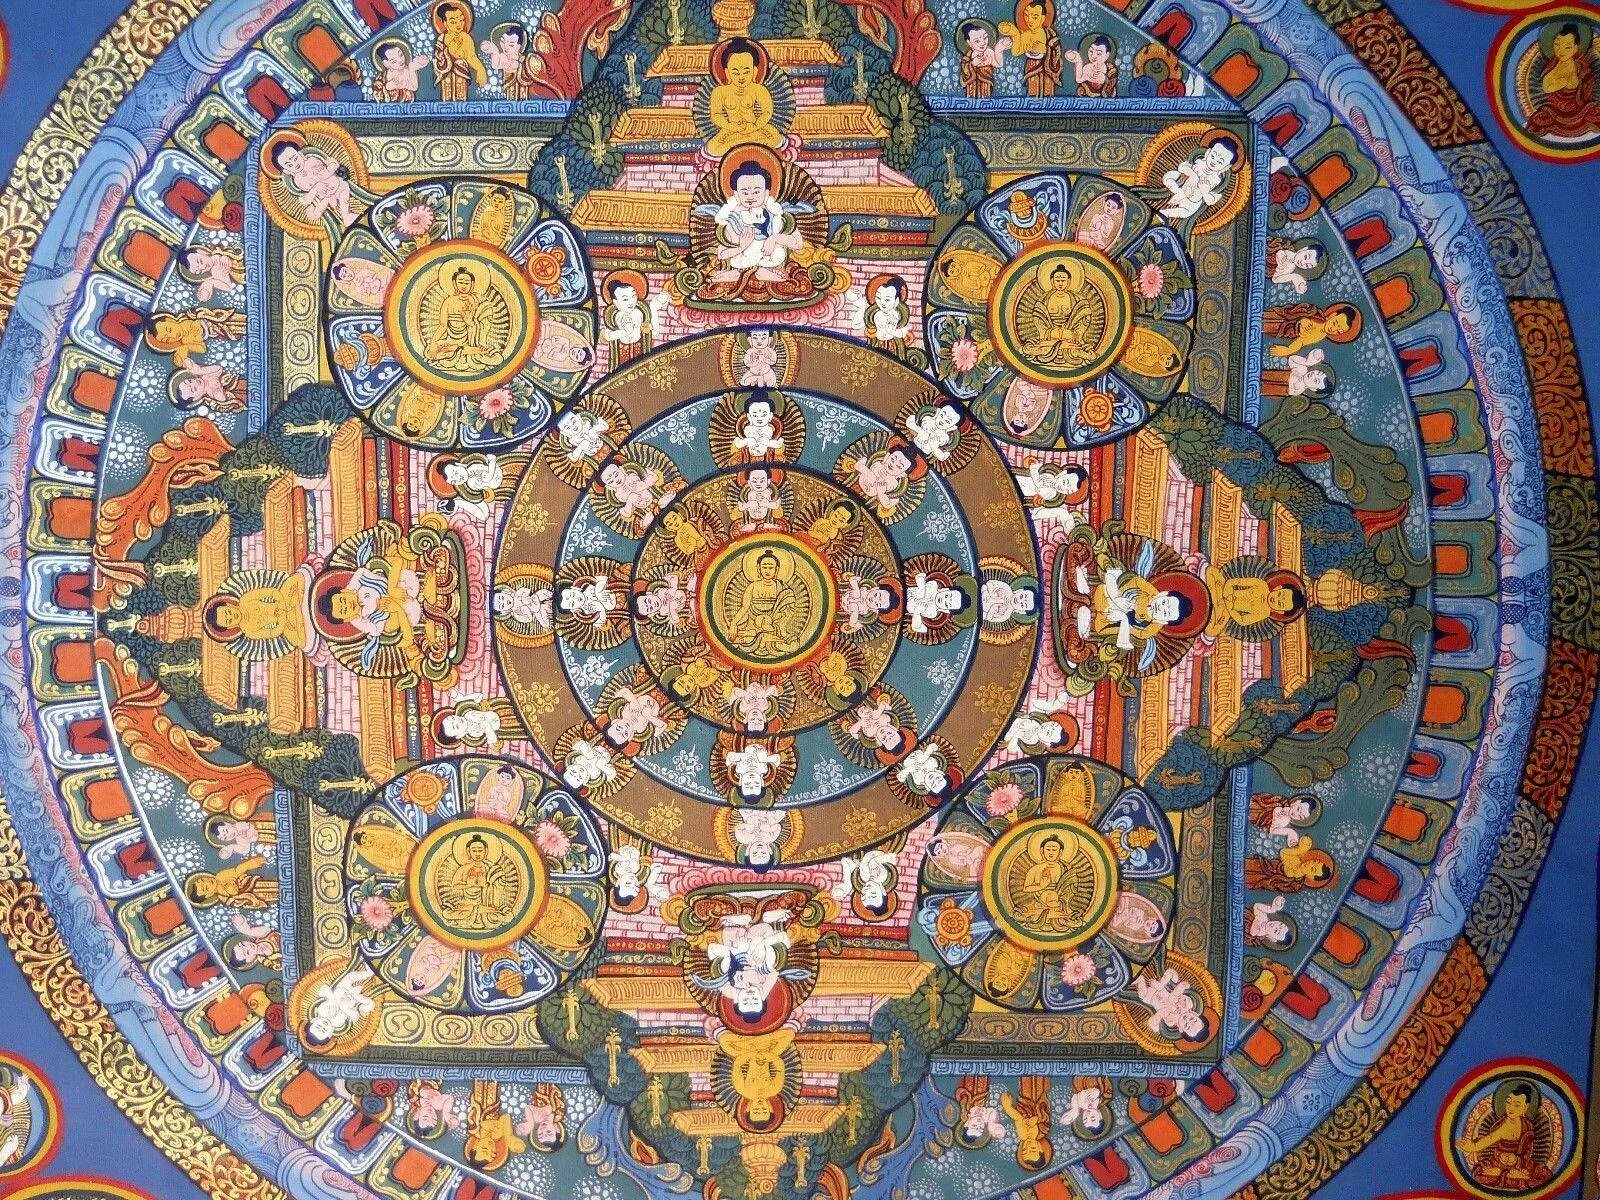 Тибетская тханка Мандала. Мандалы Тибет буддизм. Колесо Сансары Индия буддизм. Мандала Будды Шакьямуни. Кали колесо сансары